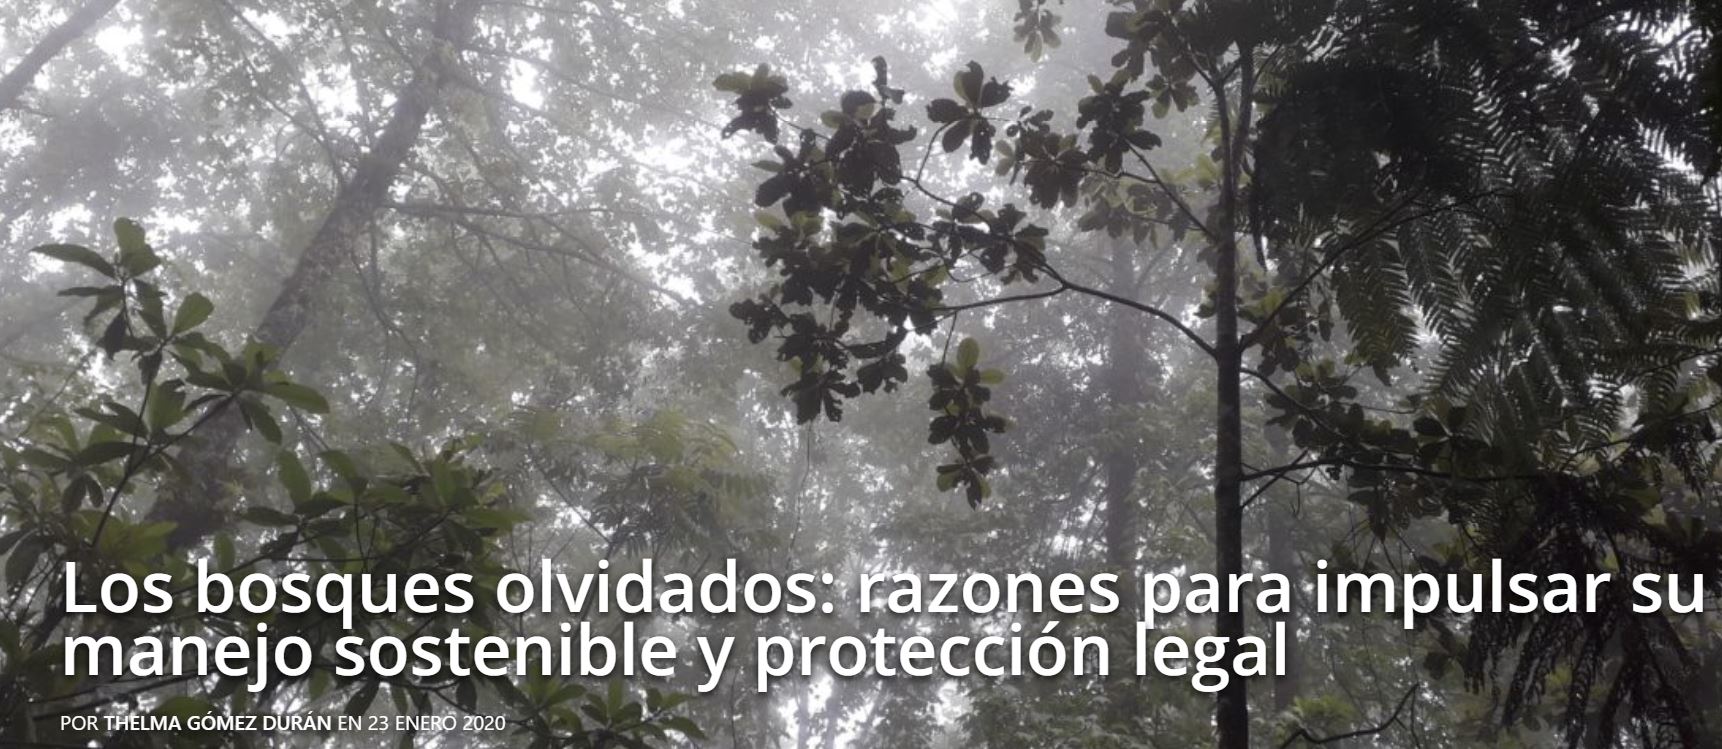 Los bosques olvidados: razones para impulsar su manejo sostenible y protección legal